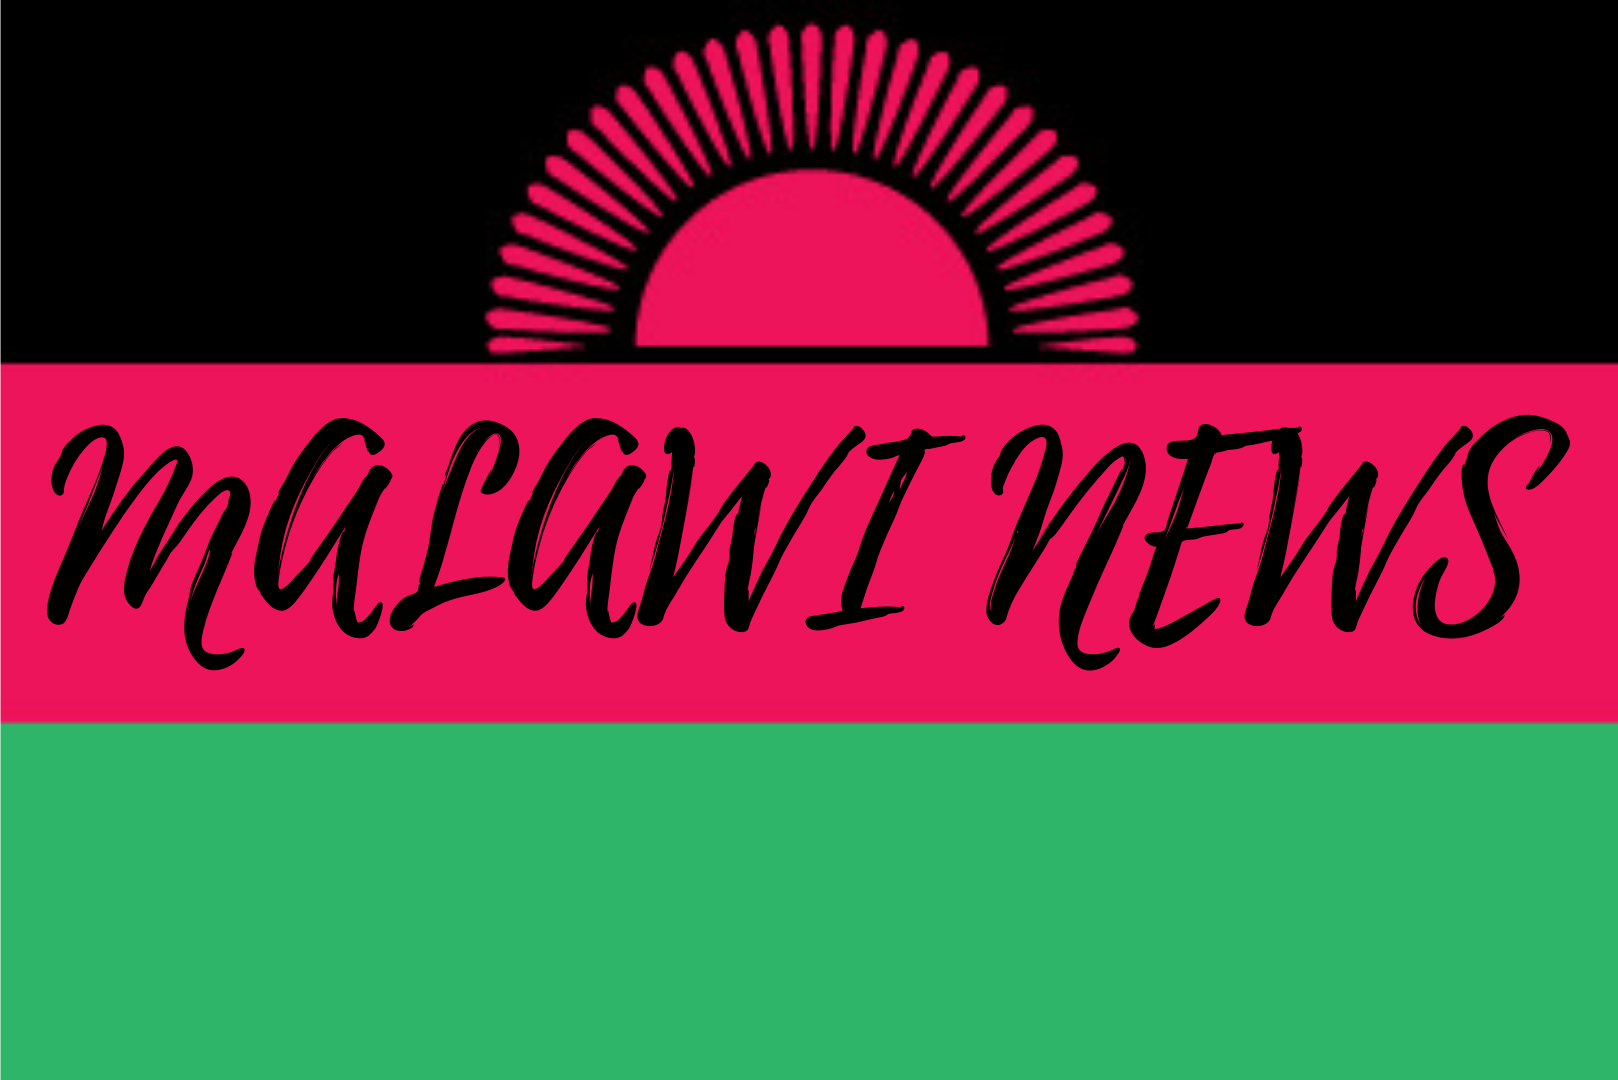 【マラウイニュース】マラウイ大学の学生が5カ月間の春休みに抗議